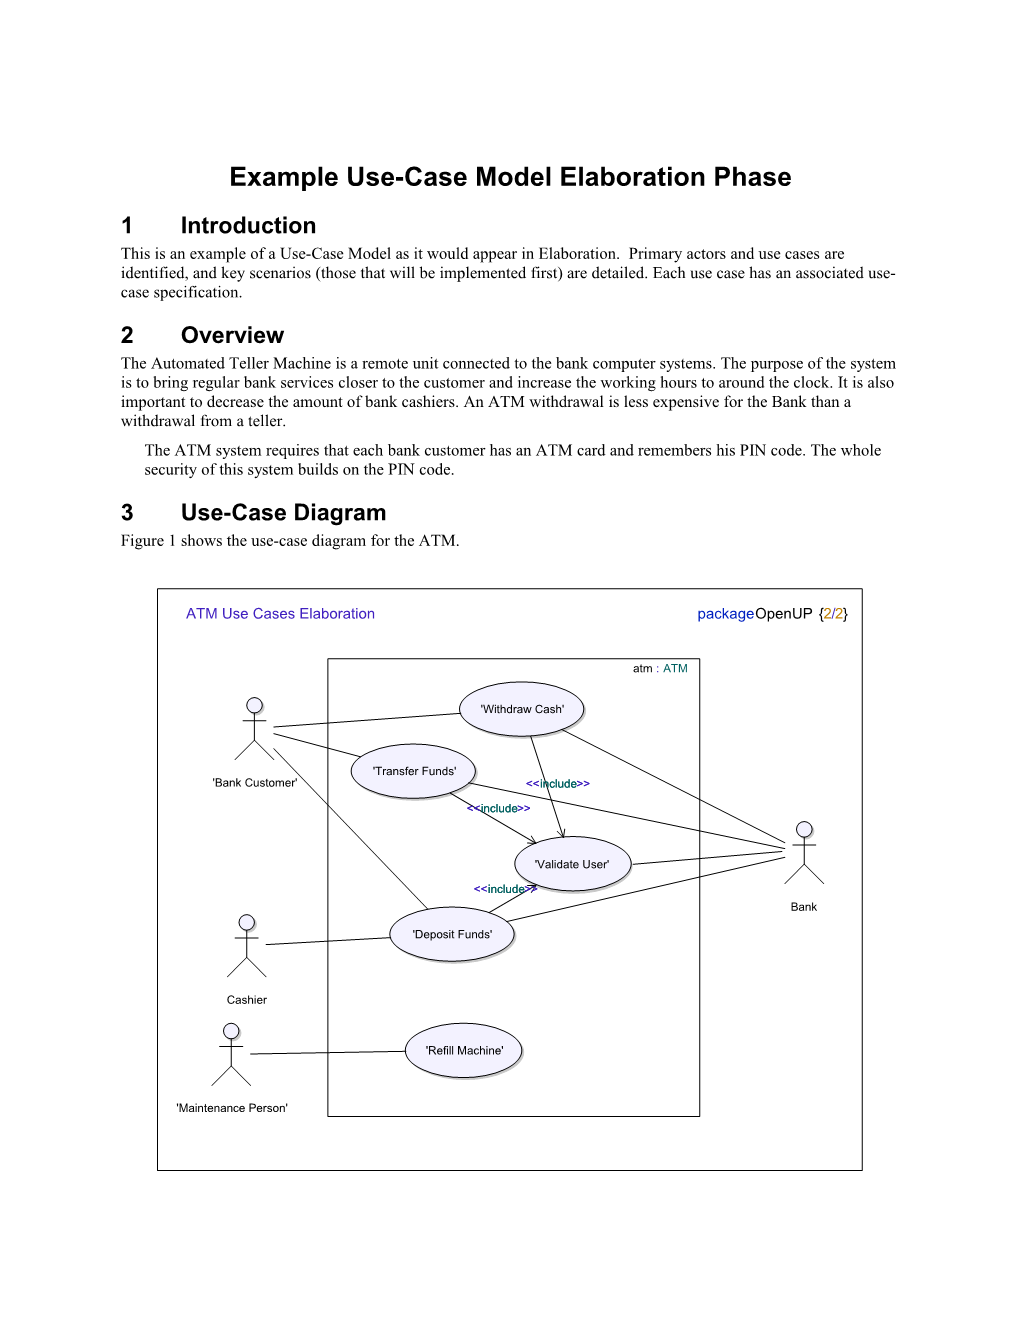 Example Use-Case Model Elaboration Phase